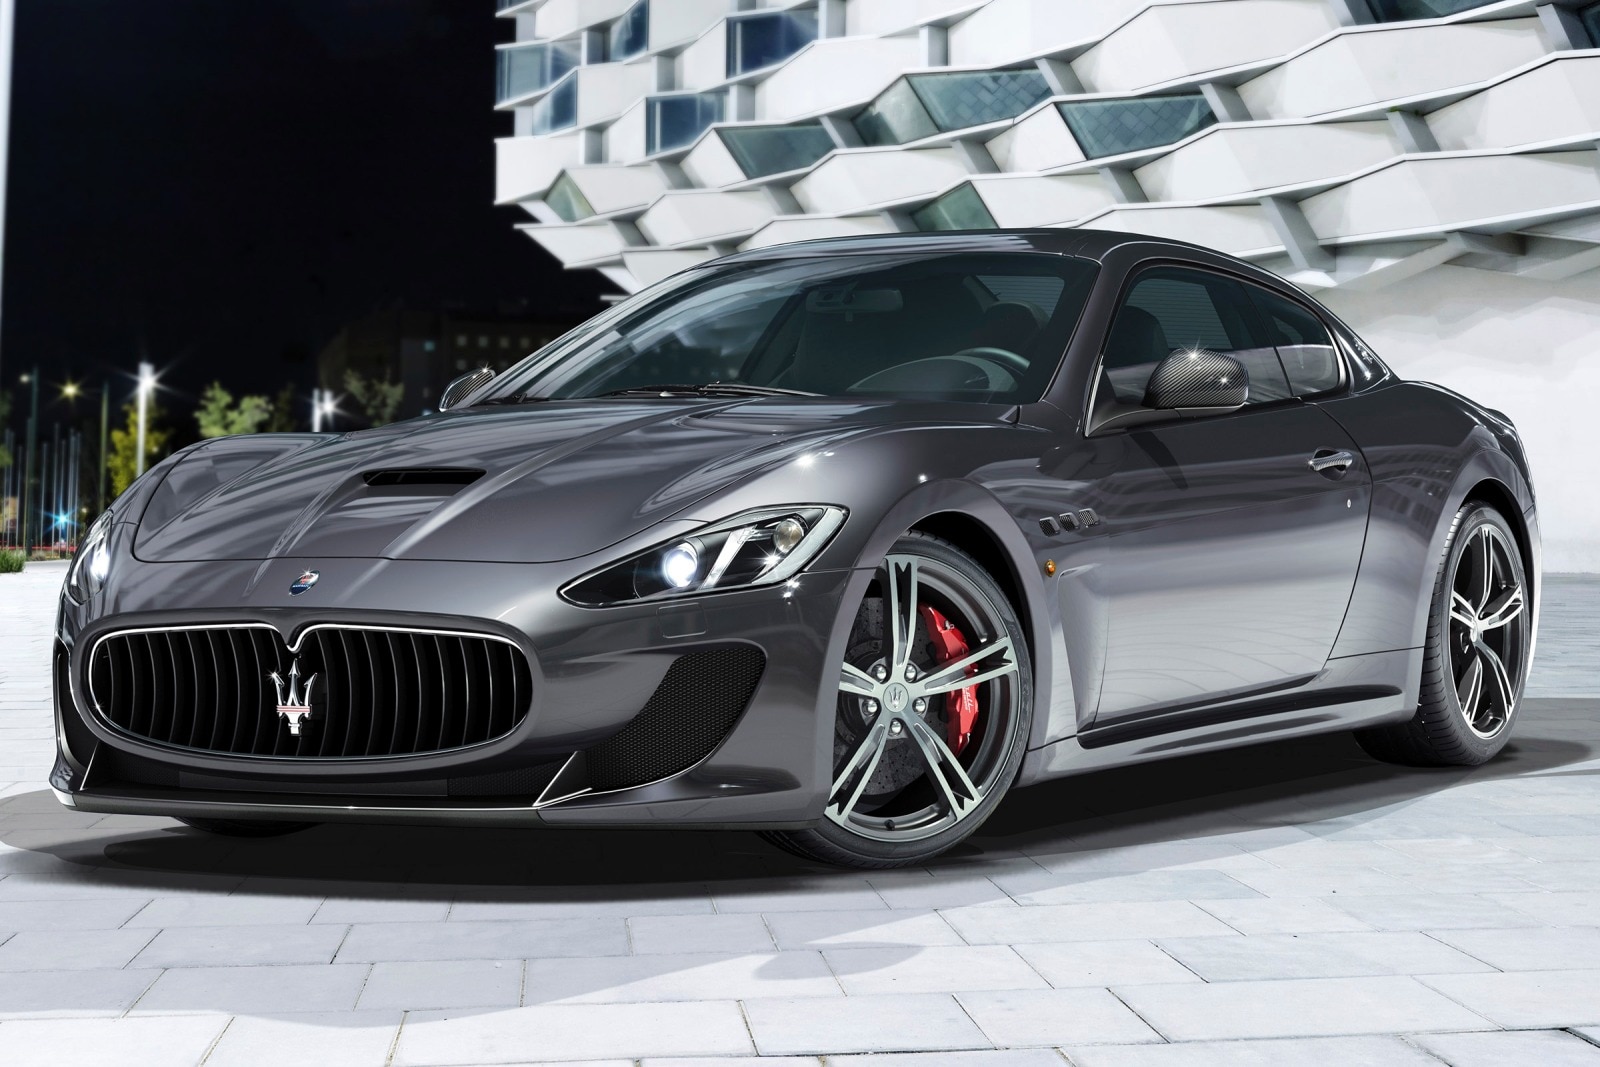 2016 Maserati GranTurismo Review & Ratings | Edmunds